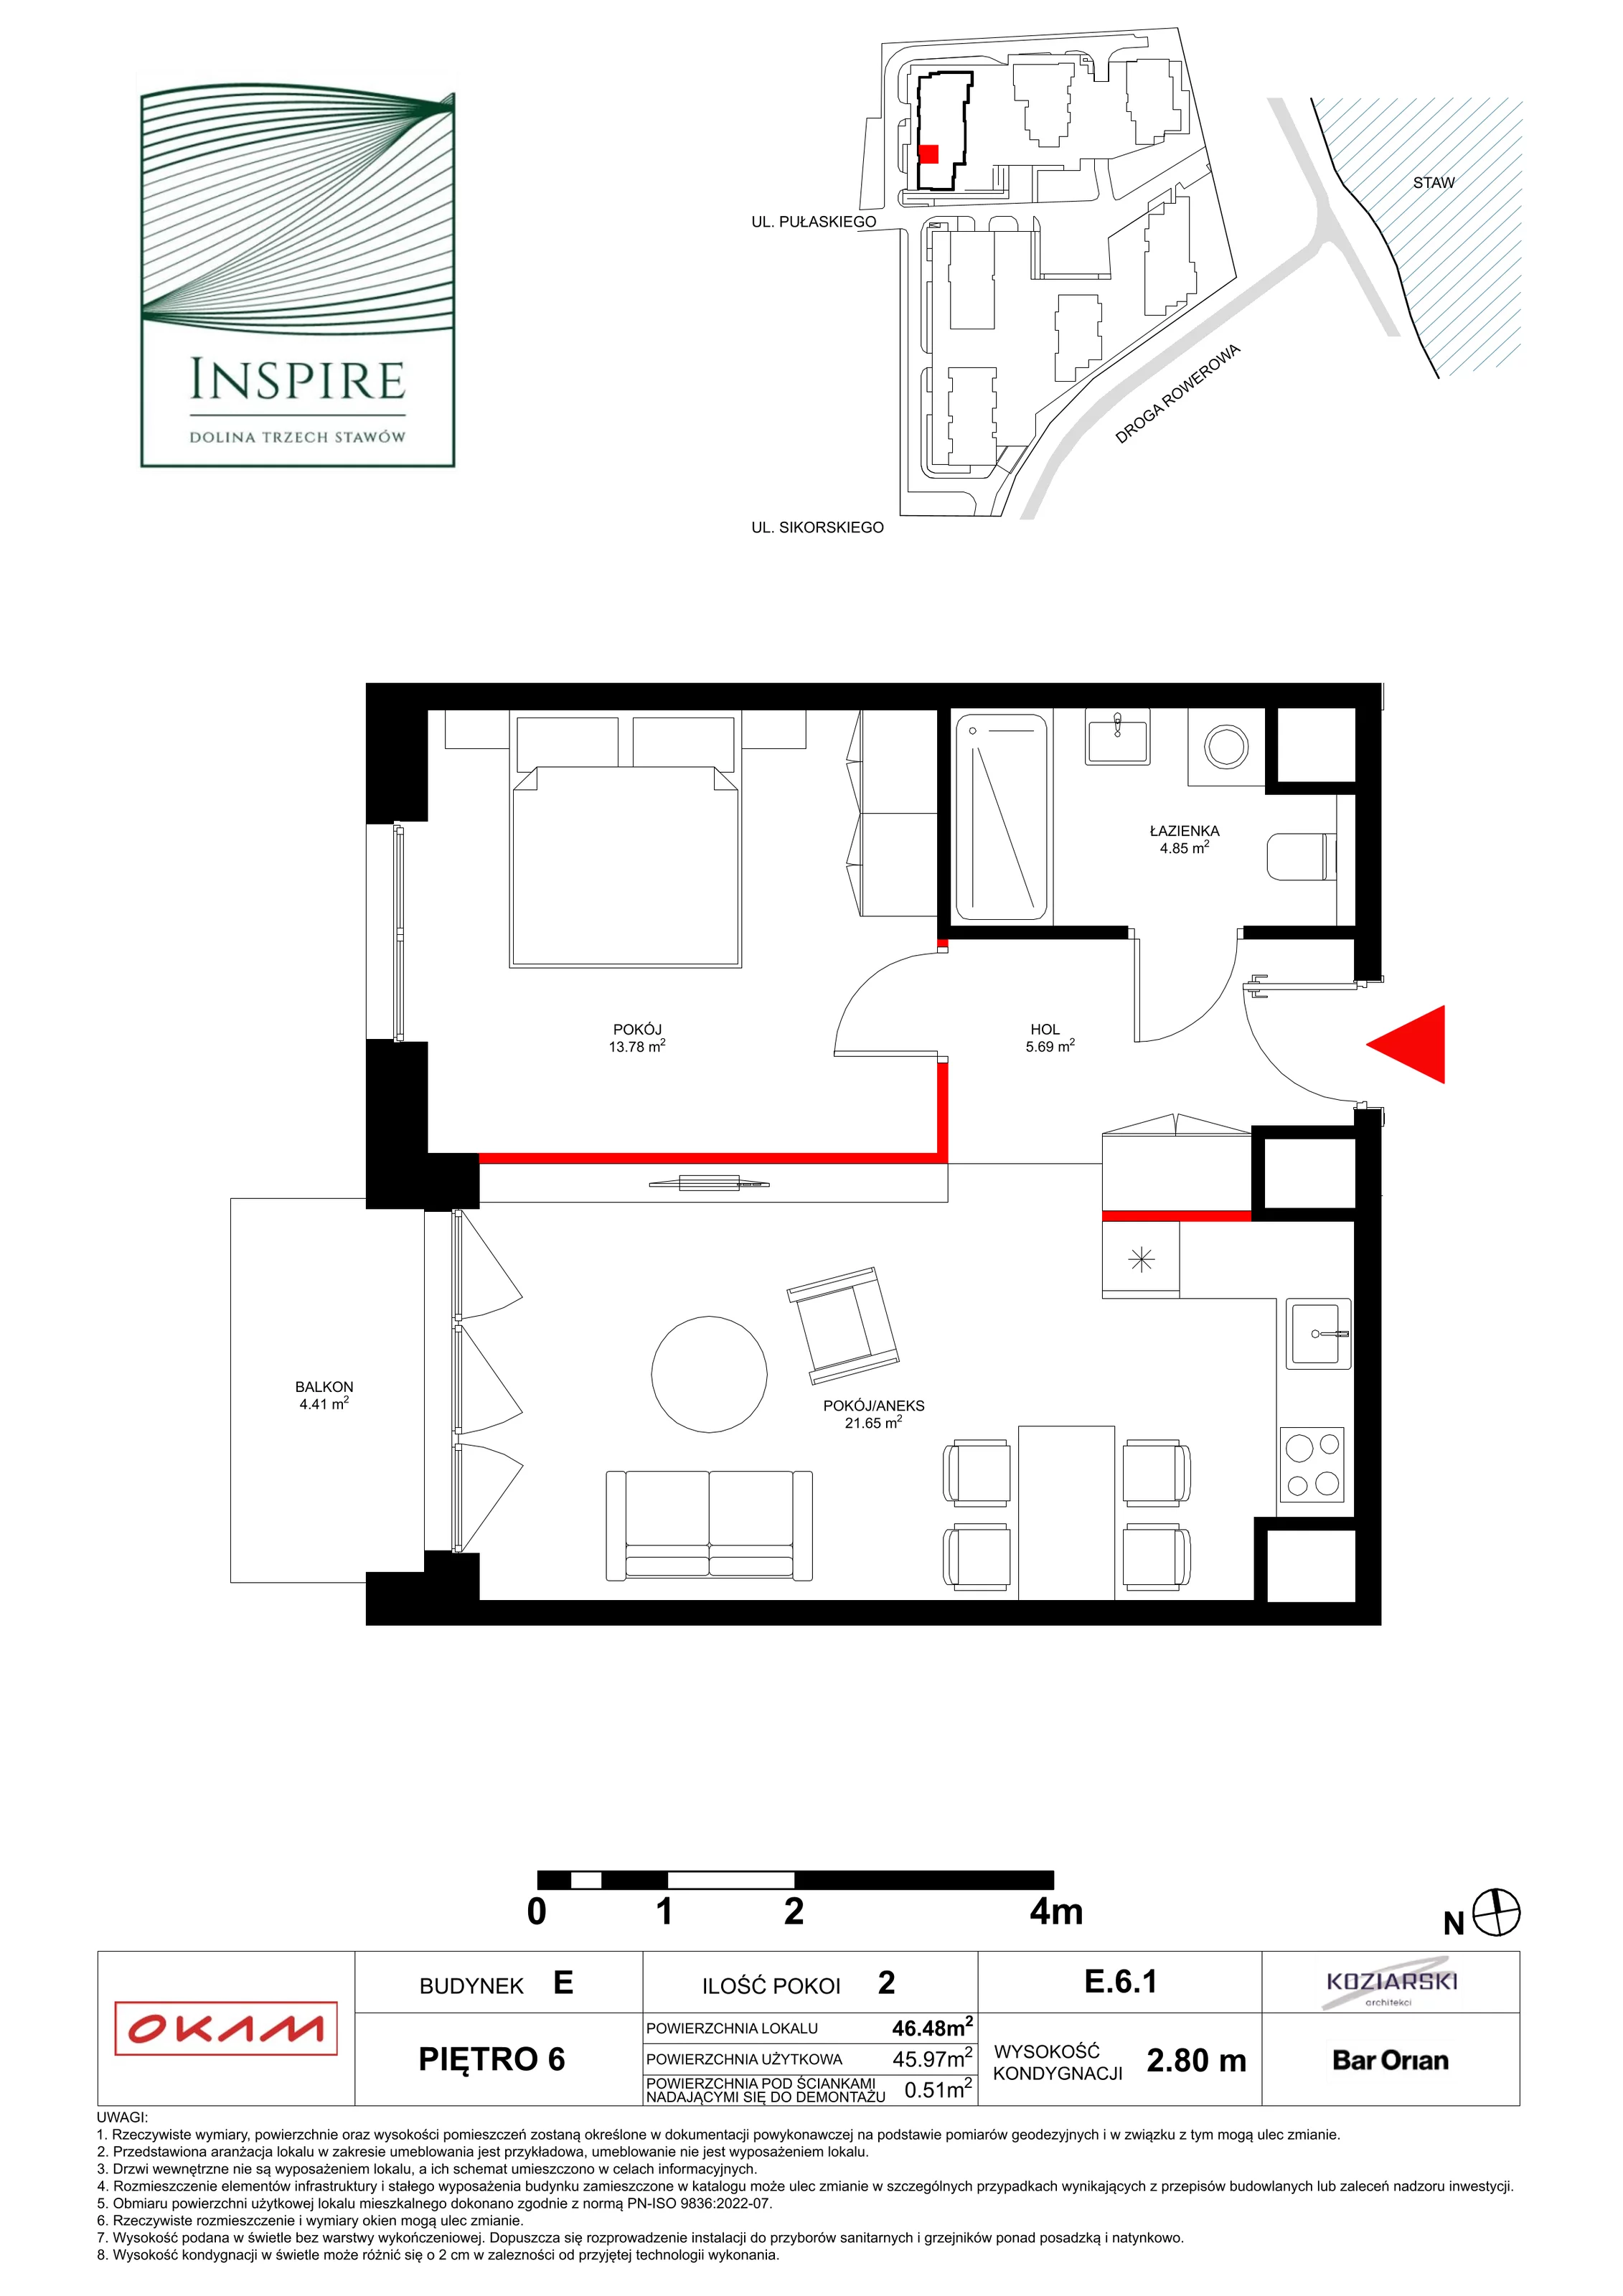 Apartament 45,97 m², piętro 6, oferta nr E.6.1, Inspire, Katowice, Osiedle Paderewskiego-Muchowiec, Dolina Trzech Stawów, ul. gen. Sikorskiego 41